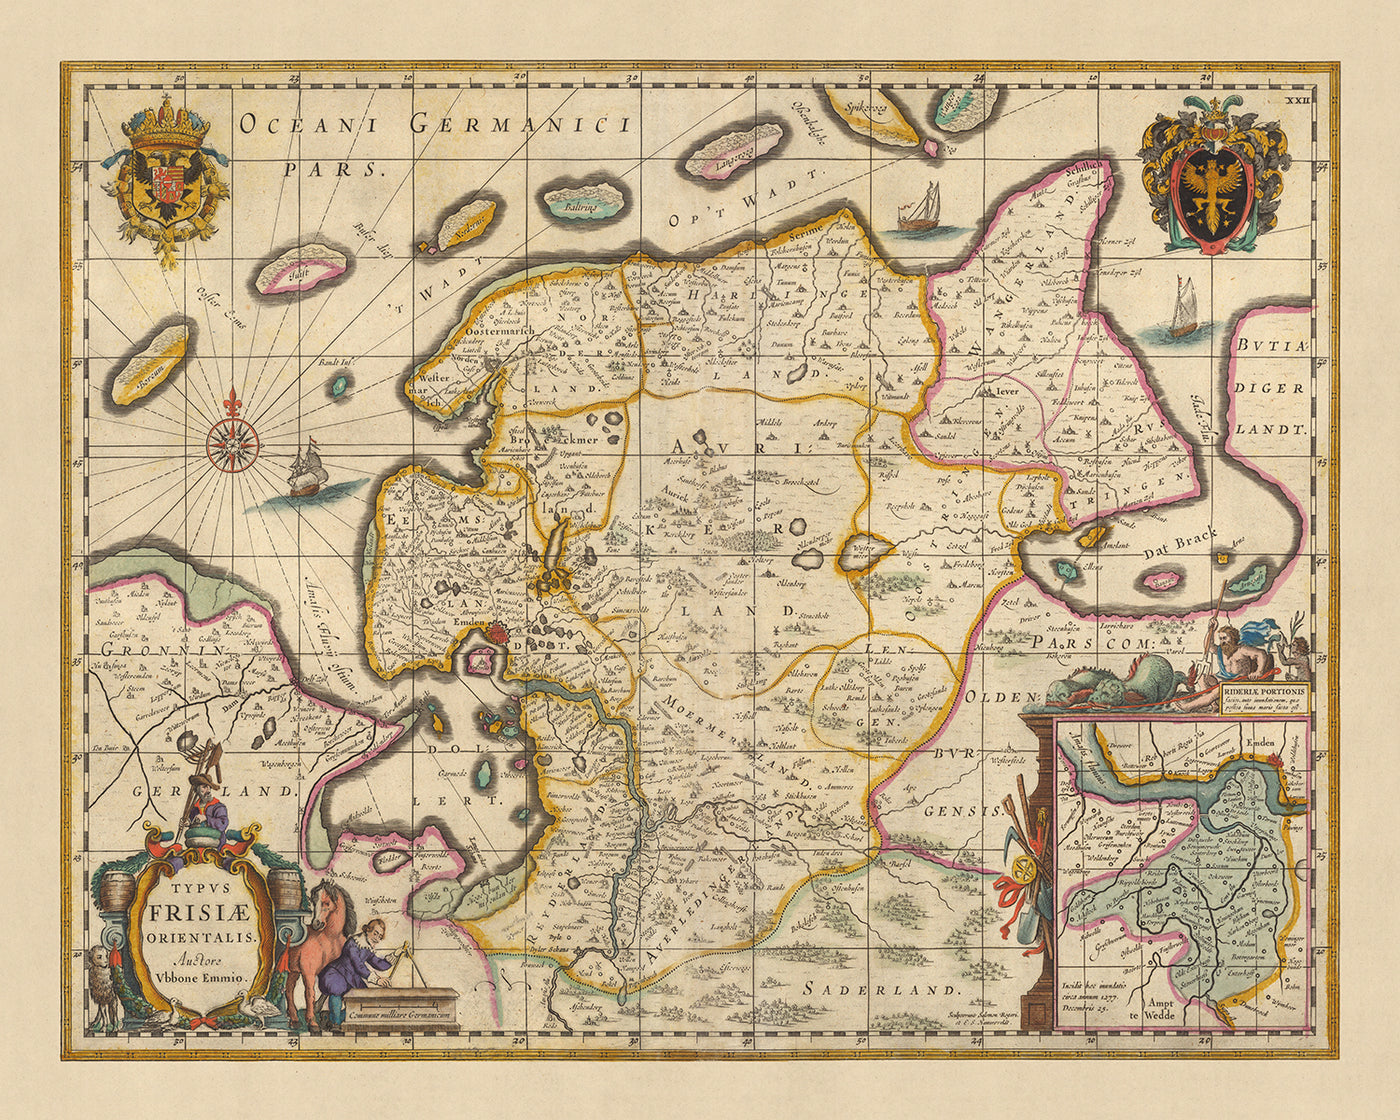 Alte Karte von Ostfriesland von Visscher, 1690: Wilhelmshaven, Emden, Aurich, Leer, Naturschutzgebiet Leyhörn